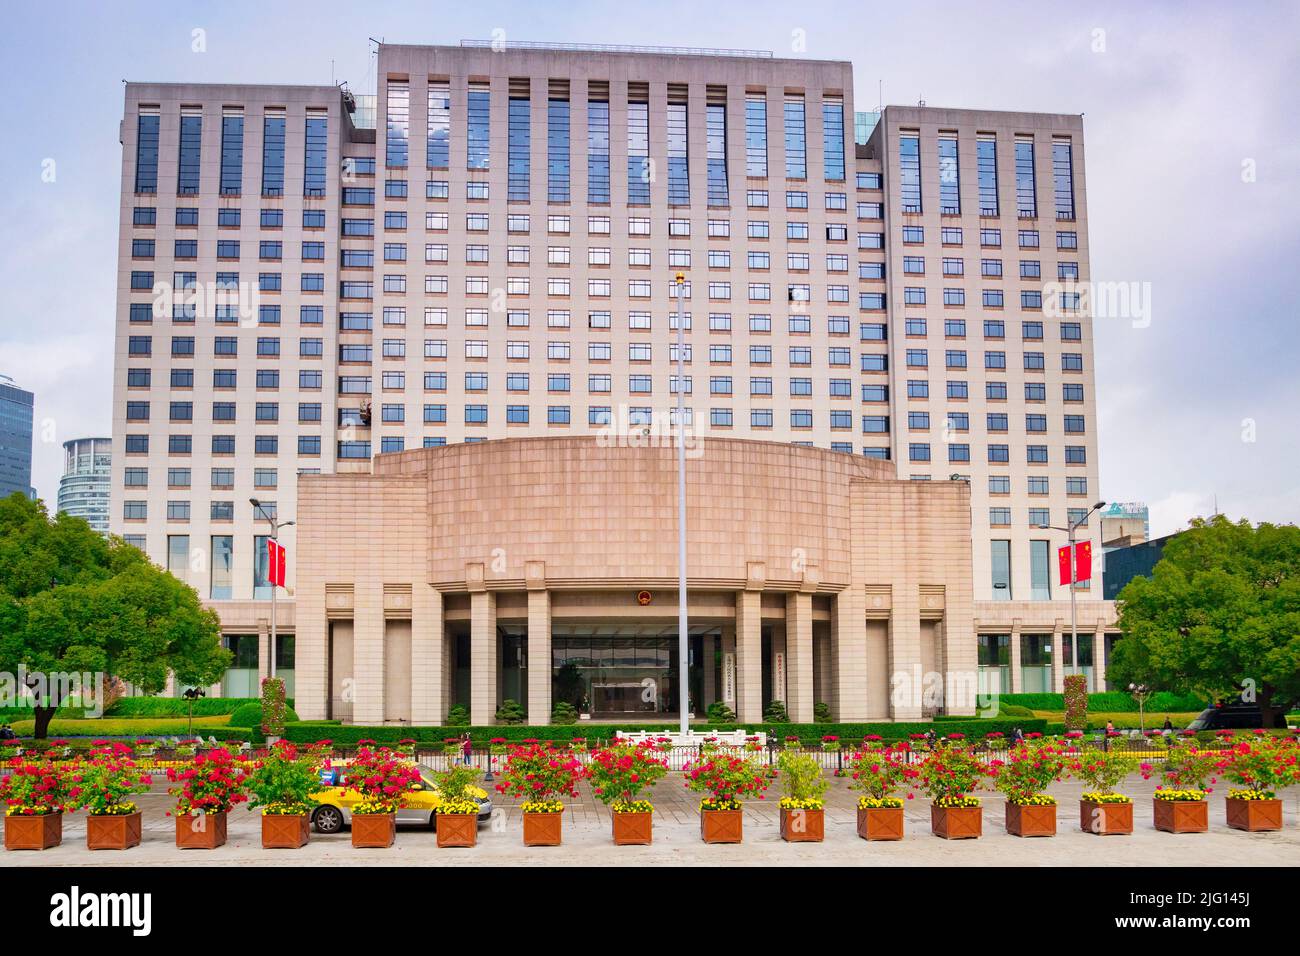 2 décembre 2018: Shanghai, Chine - le bâtiment du gouvernement populaire, en face sont des baignoires d'usines et un taxi. Banque D'Images